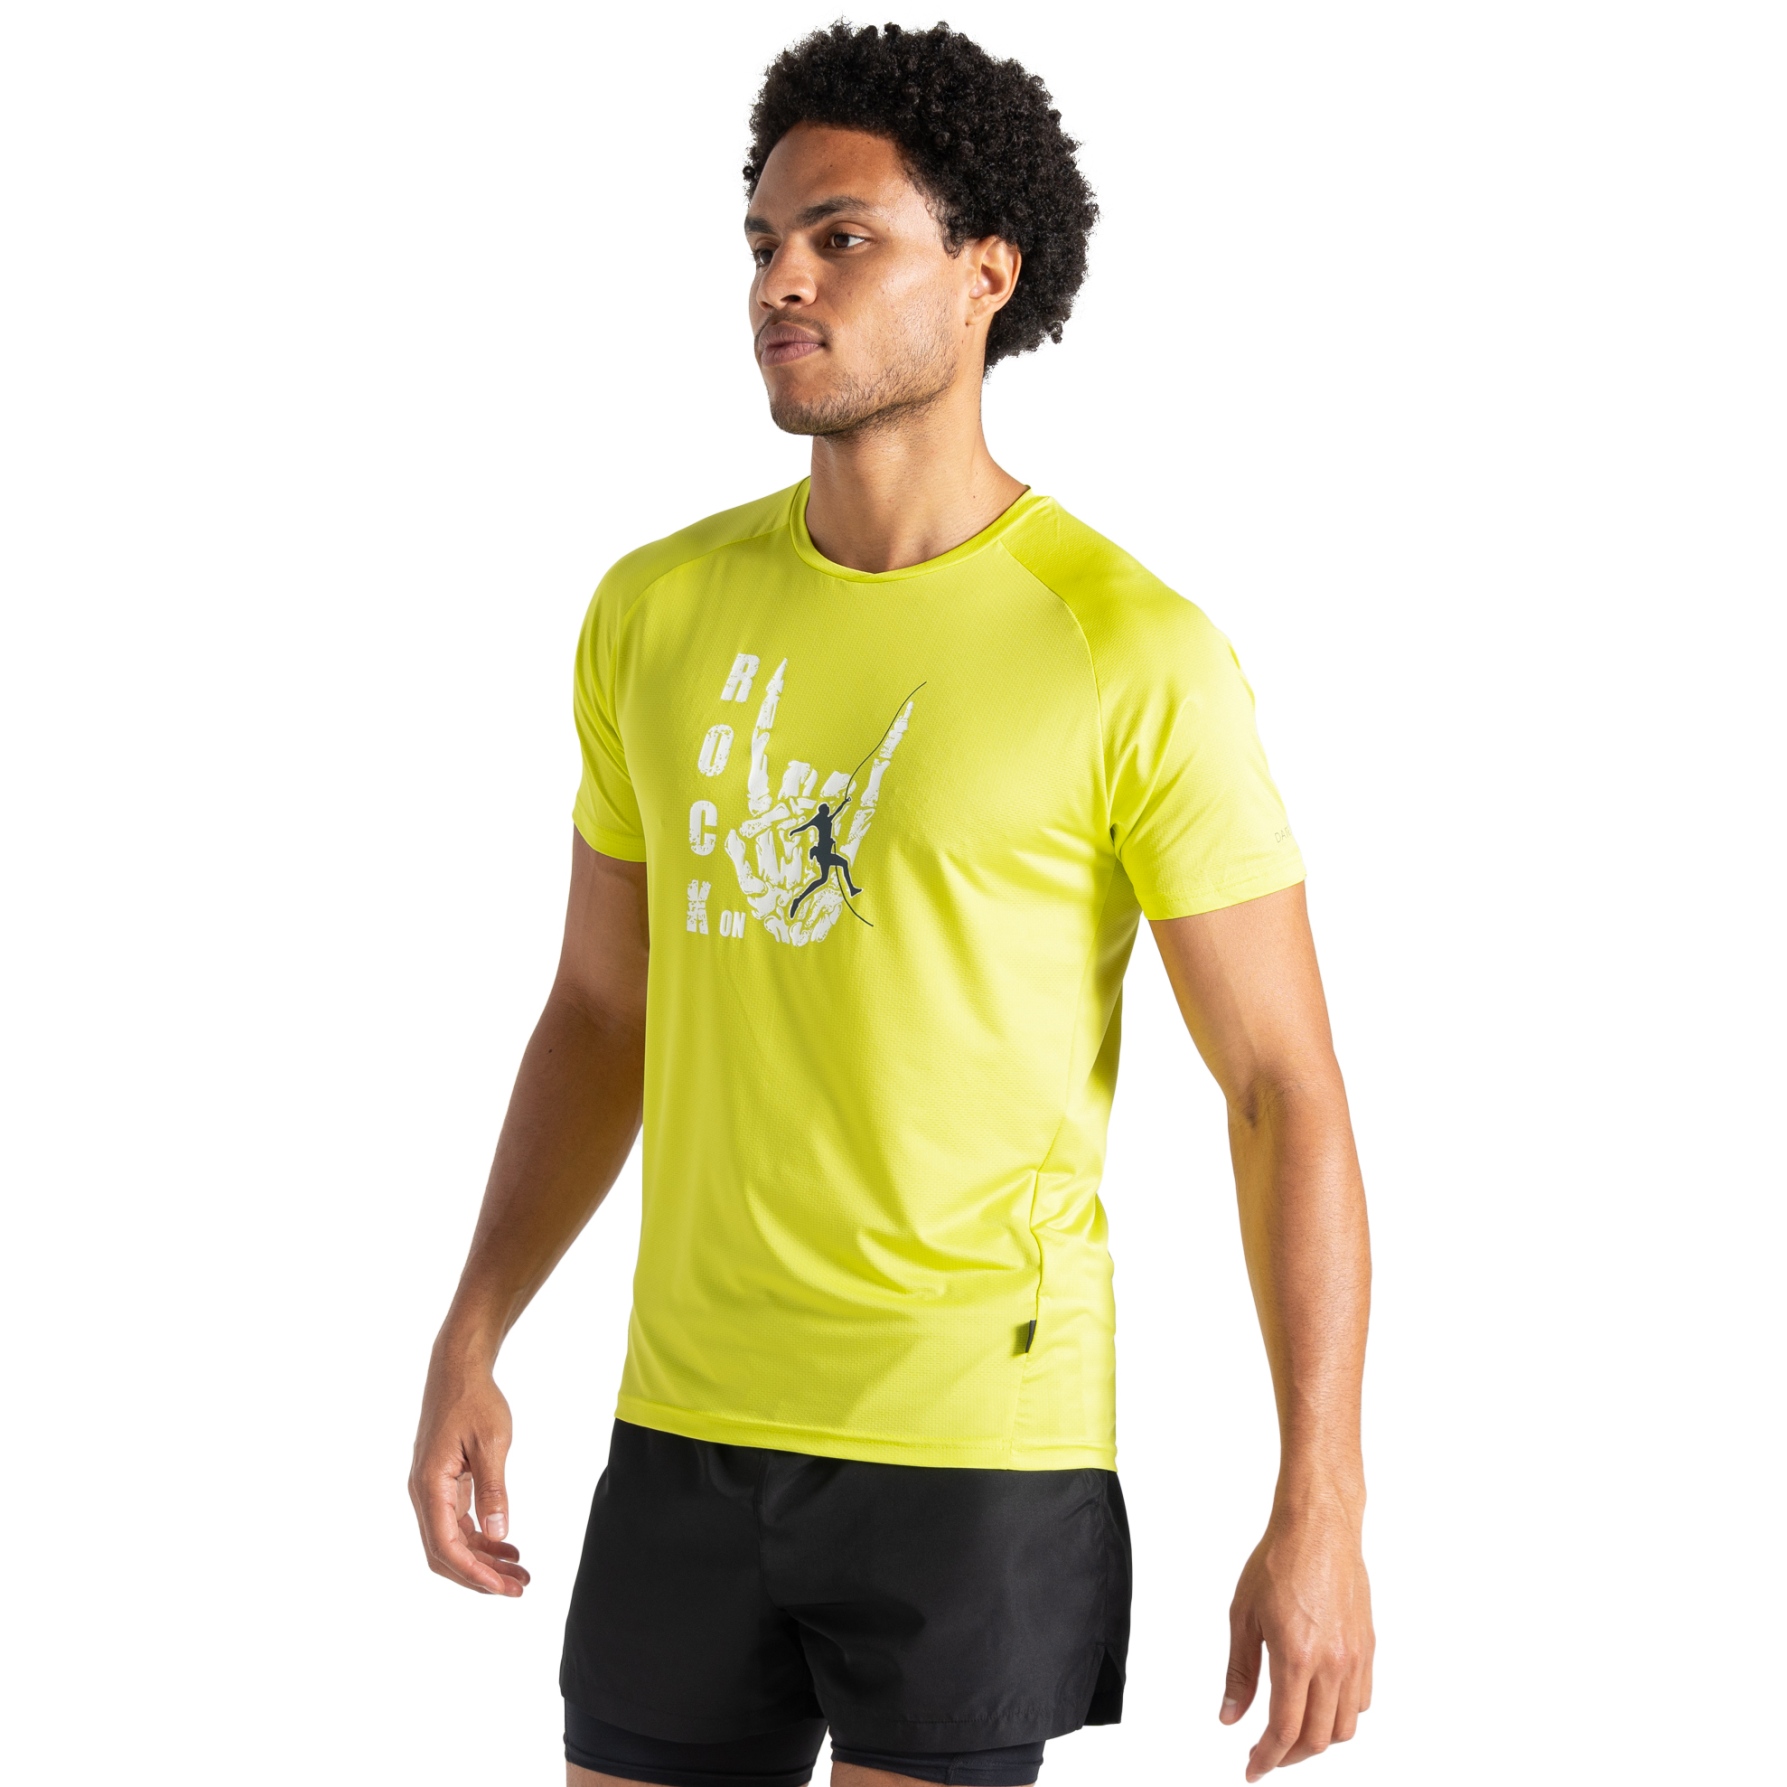 Produktbild von Dare 2b Tech T-Shirt Herren - 4KW Neon Spring